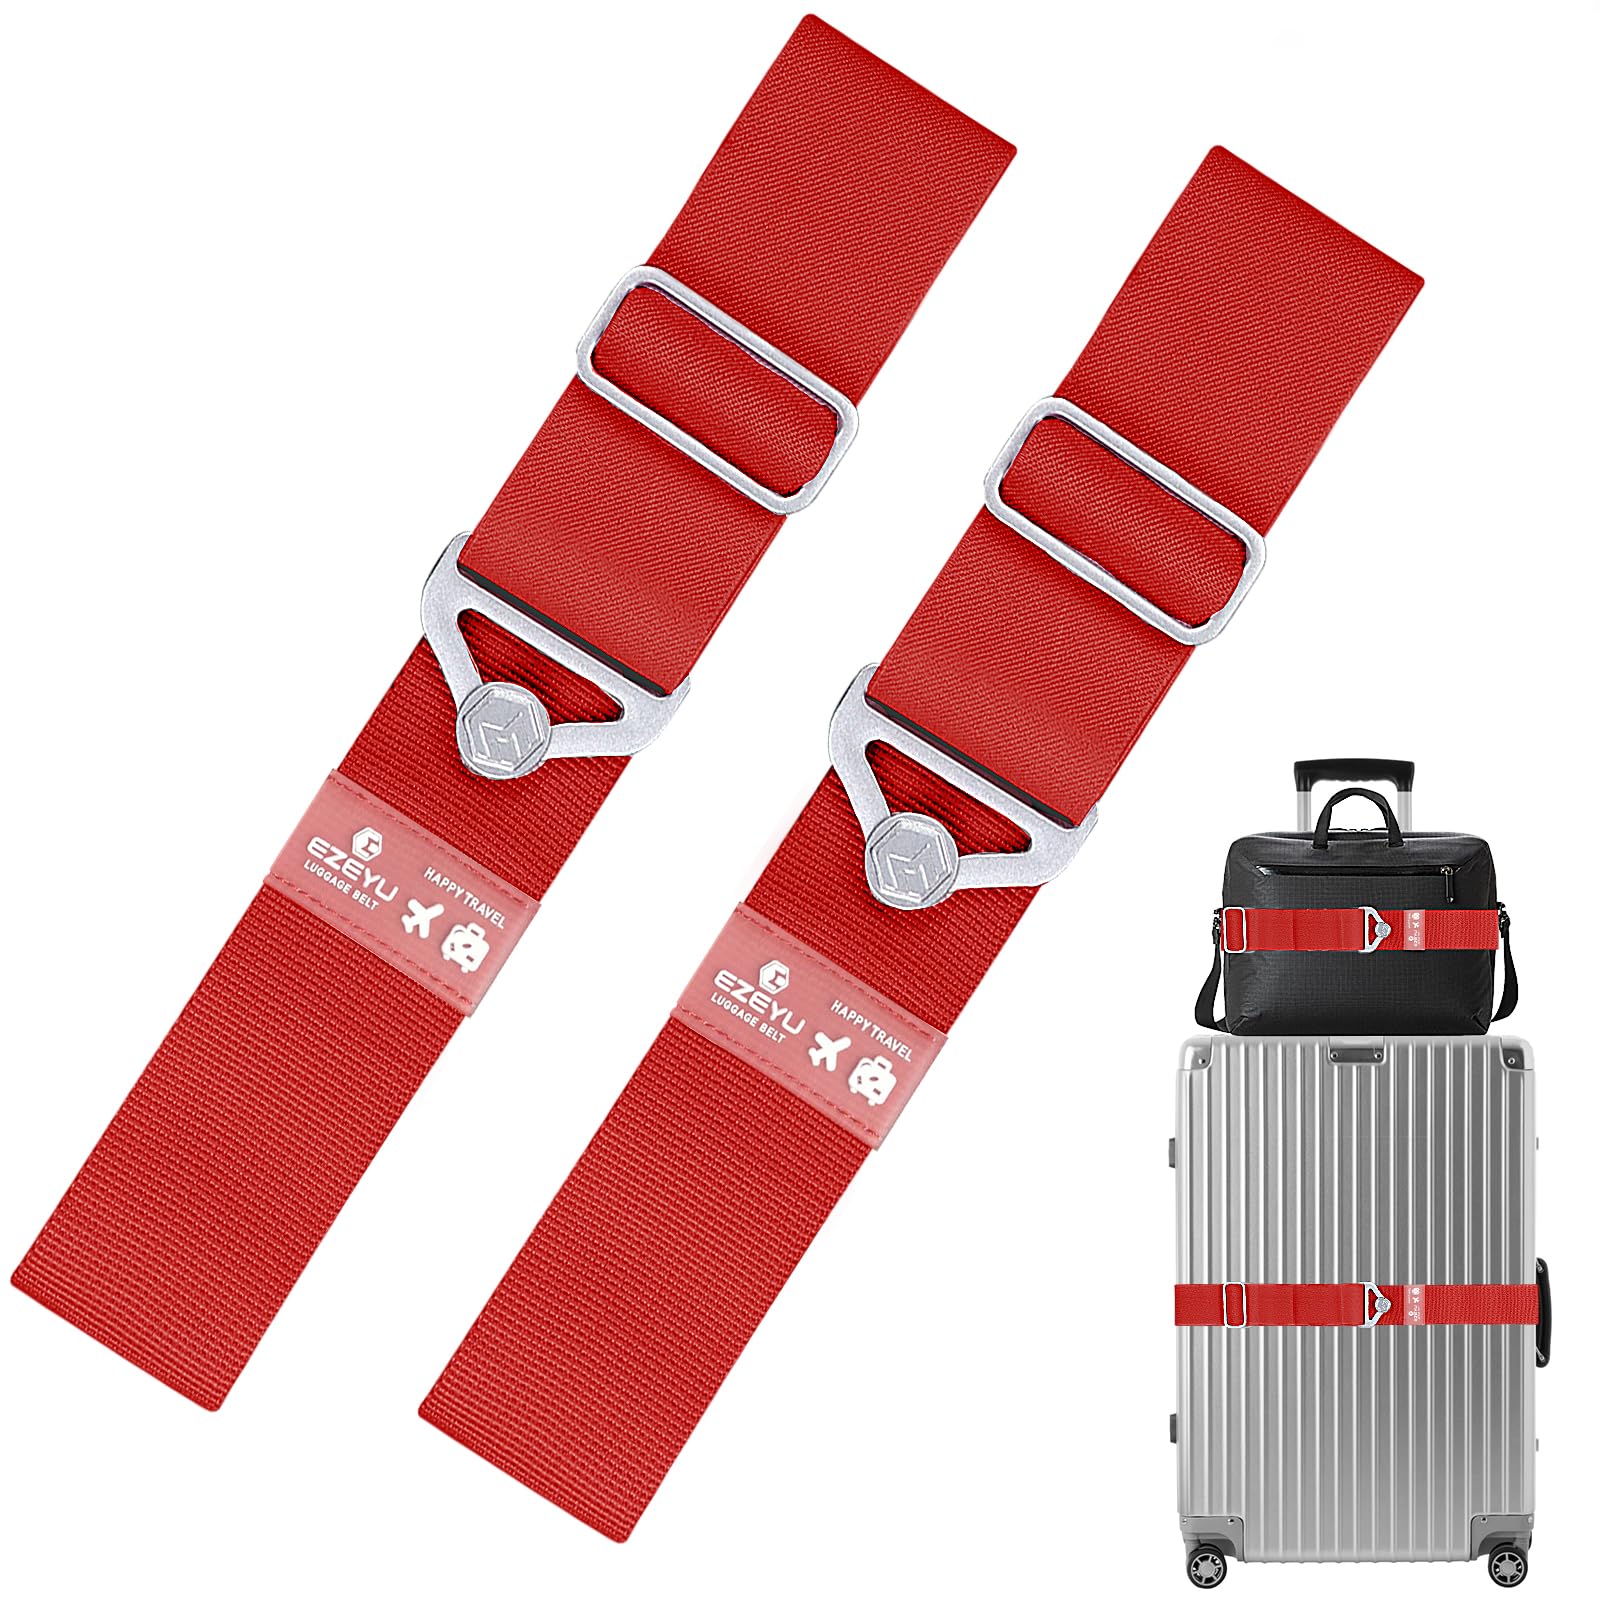 2 Stück Elastisch Koffergurt Set, Einstellbar Kofferband Gurt, Rot 2-in-1-Reisegürtel für Gepäck, Koffergurte Personalisierte Identifikation Verstellbare Rutschfestes Reisezube von Grantop